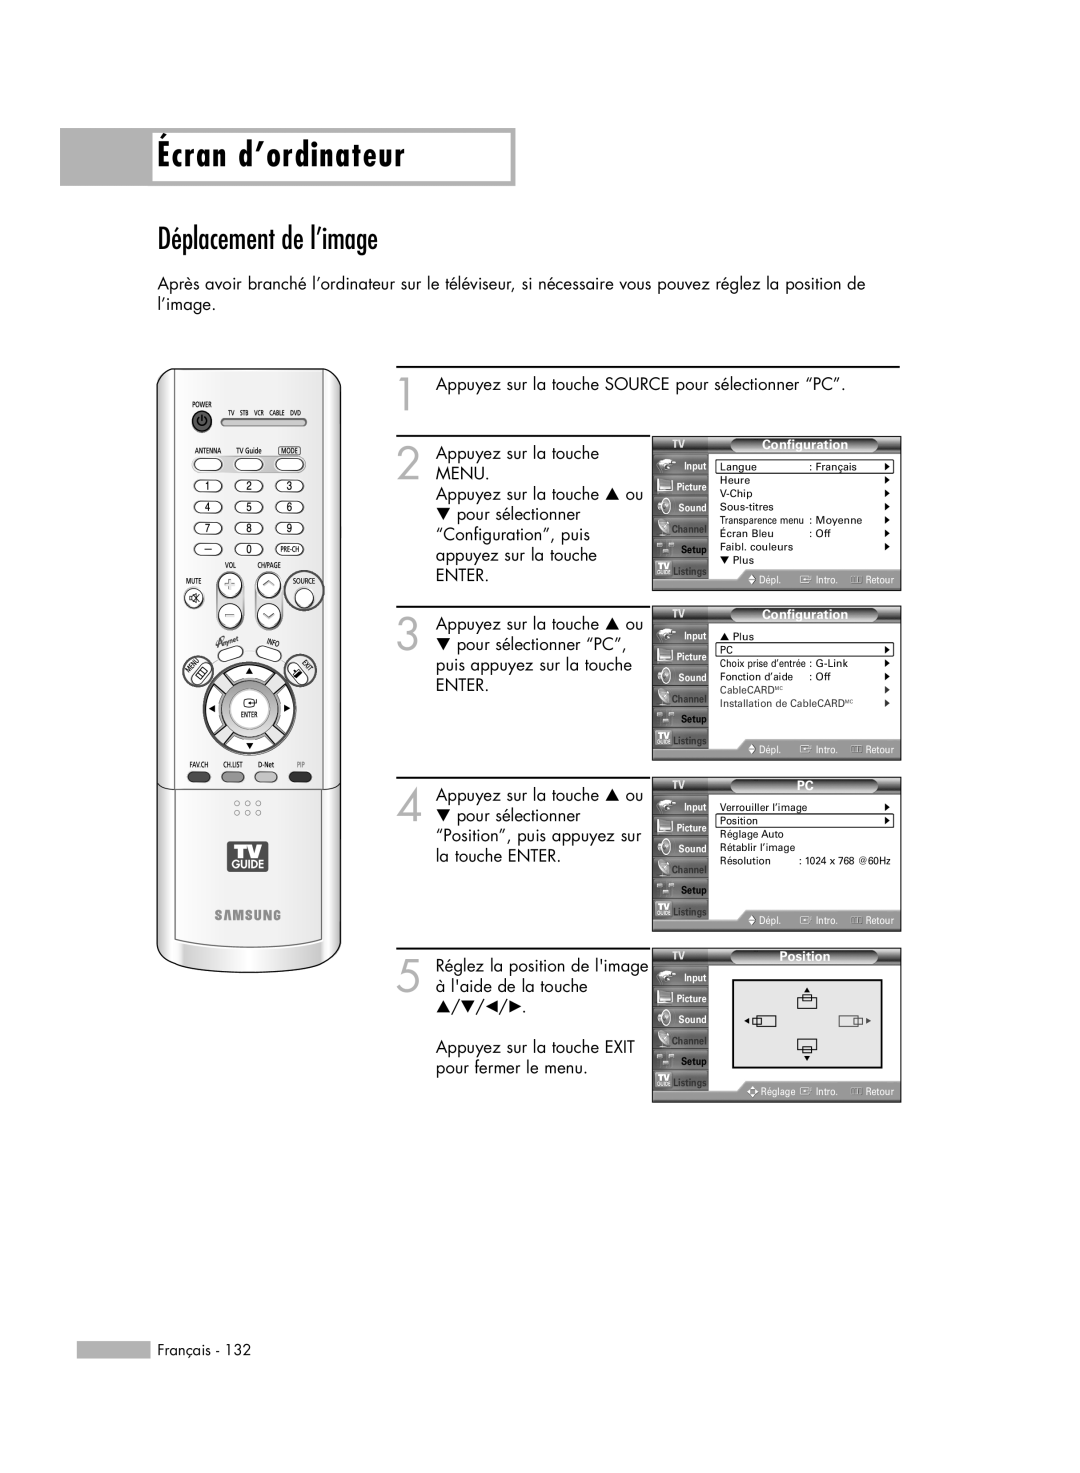 Samsung HL-R6178W, HL-R5078W, HL-R5678W, HL-R7178W manual Déplacement de l’image, Écran d’ordinateur 